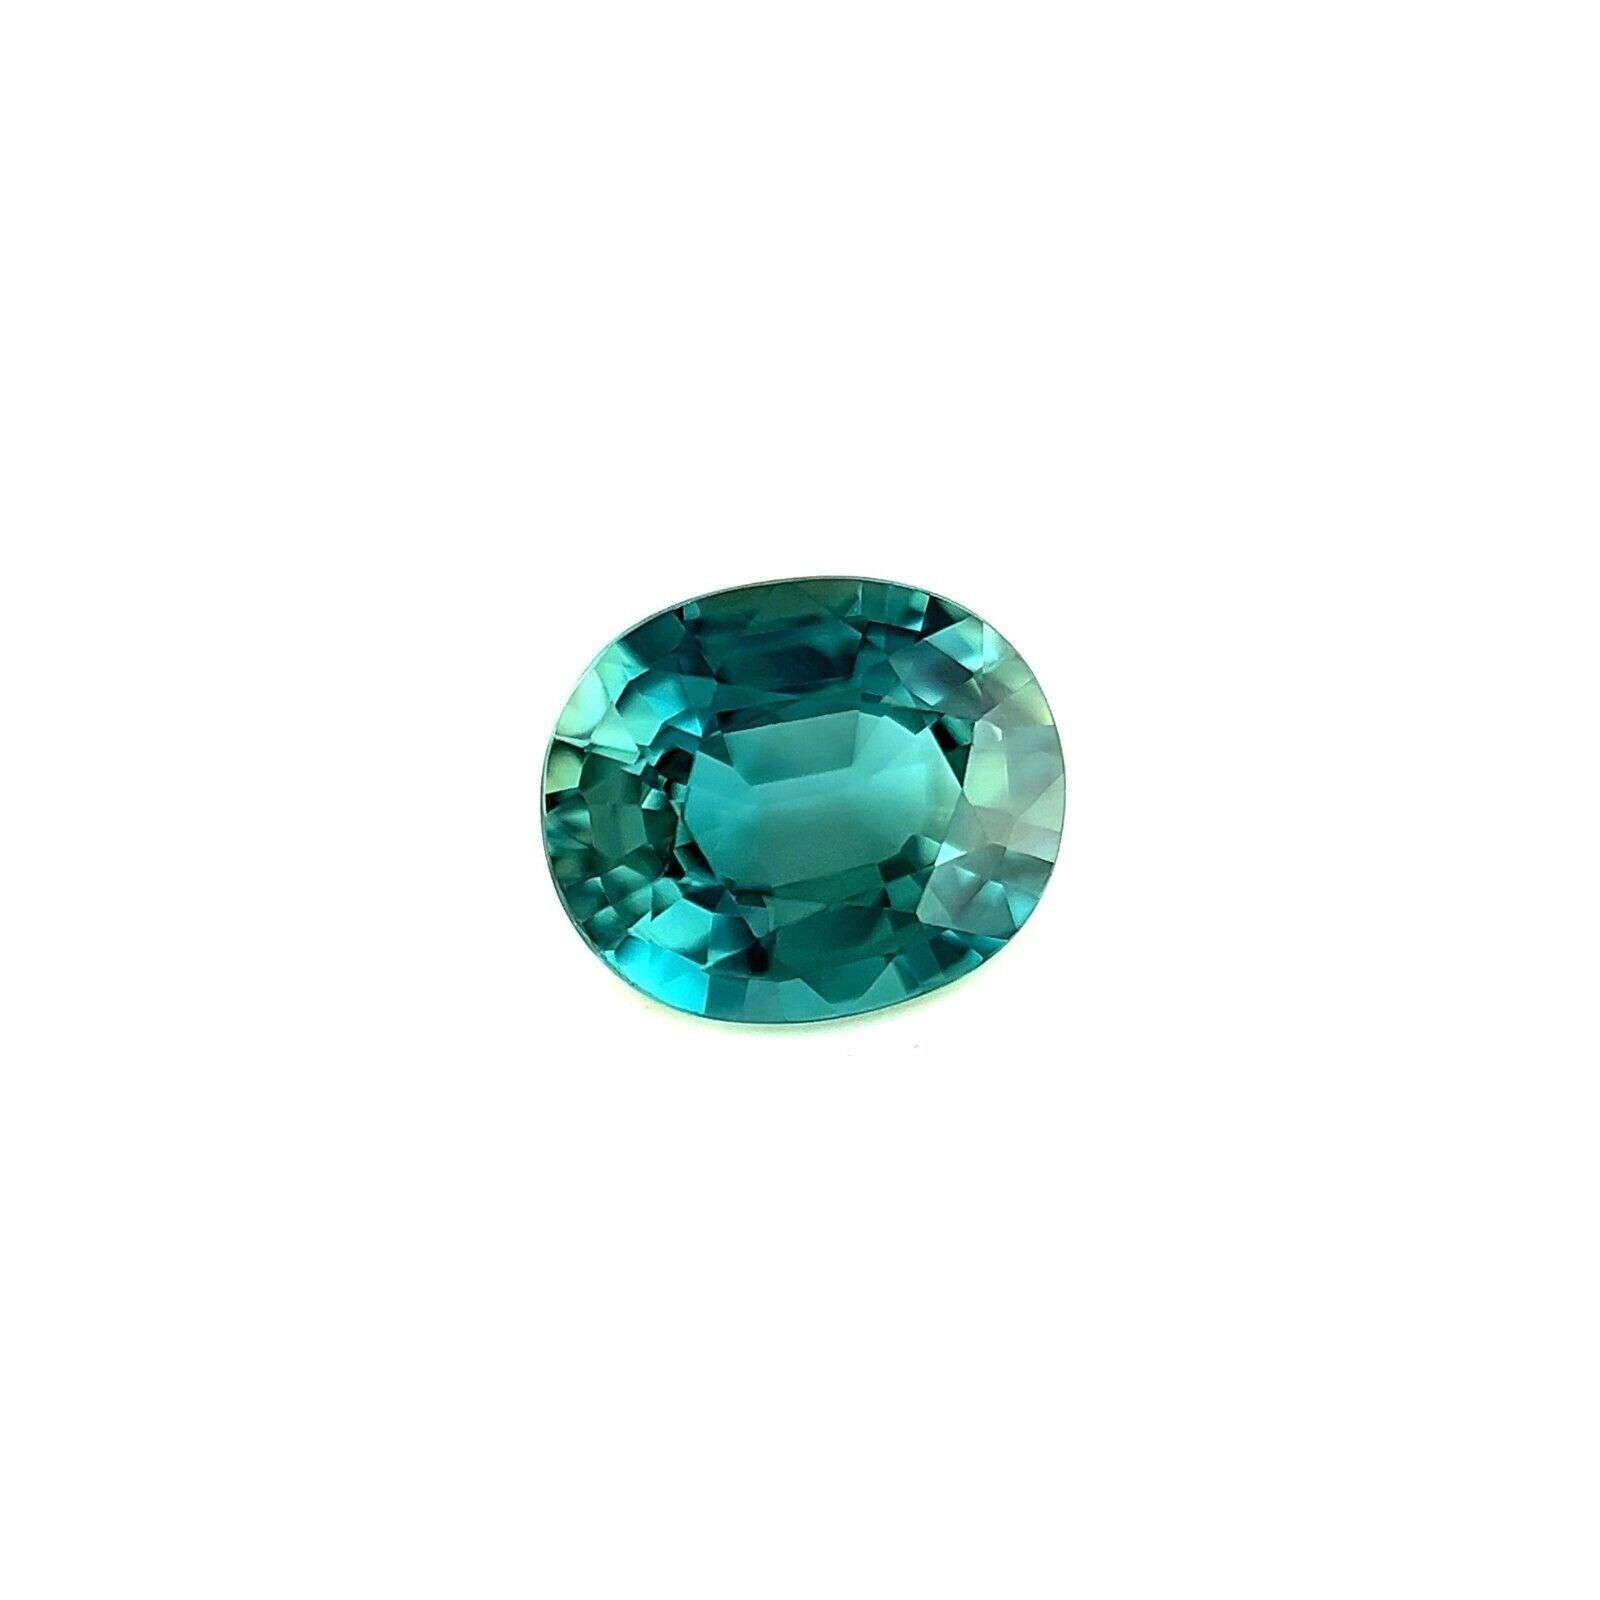 Teal Sapphire 1.18Ct Natural Vivid Green Blue Australian Oval Cut Gem VS
 
 Nature Unique Green Blue Teal Australian Sapphire Gemstone.
 Saphir de 1,08 carat d'une magnifique couleur vert bleu 